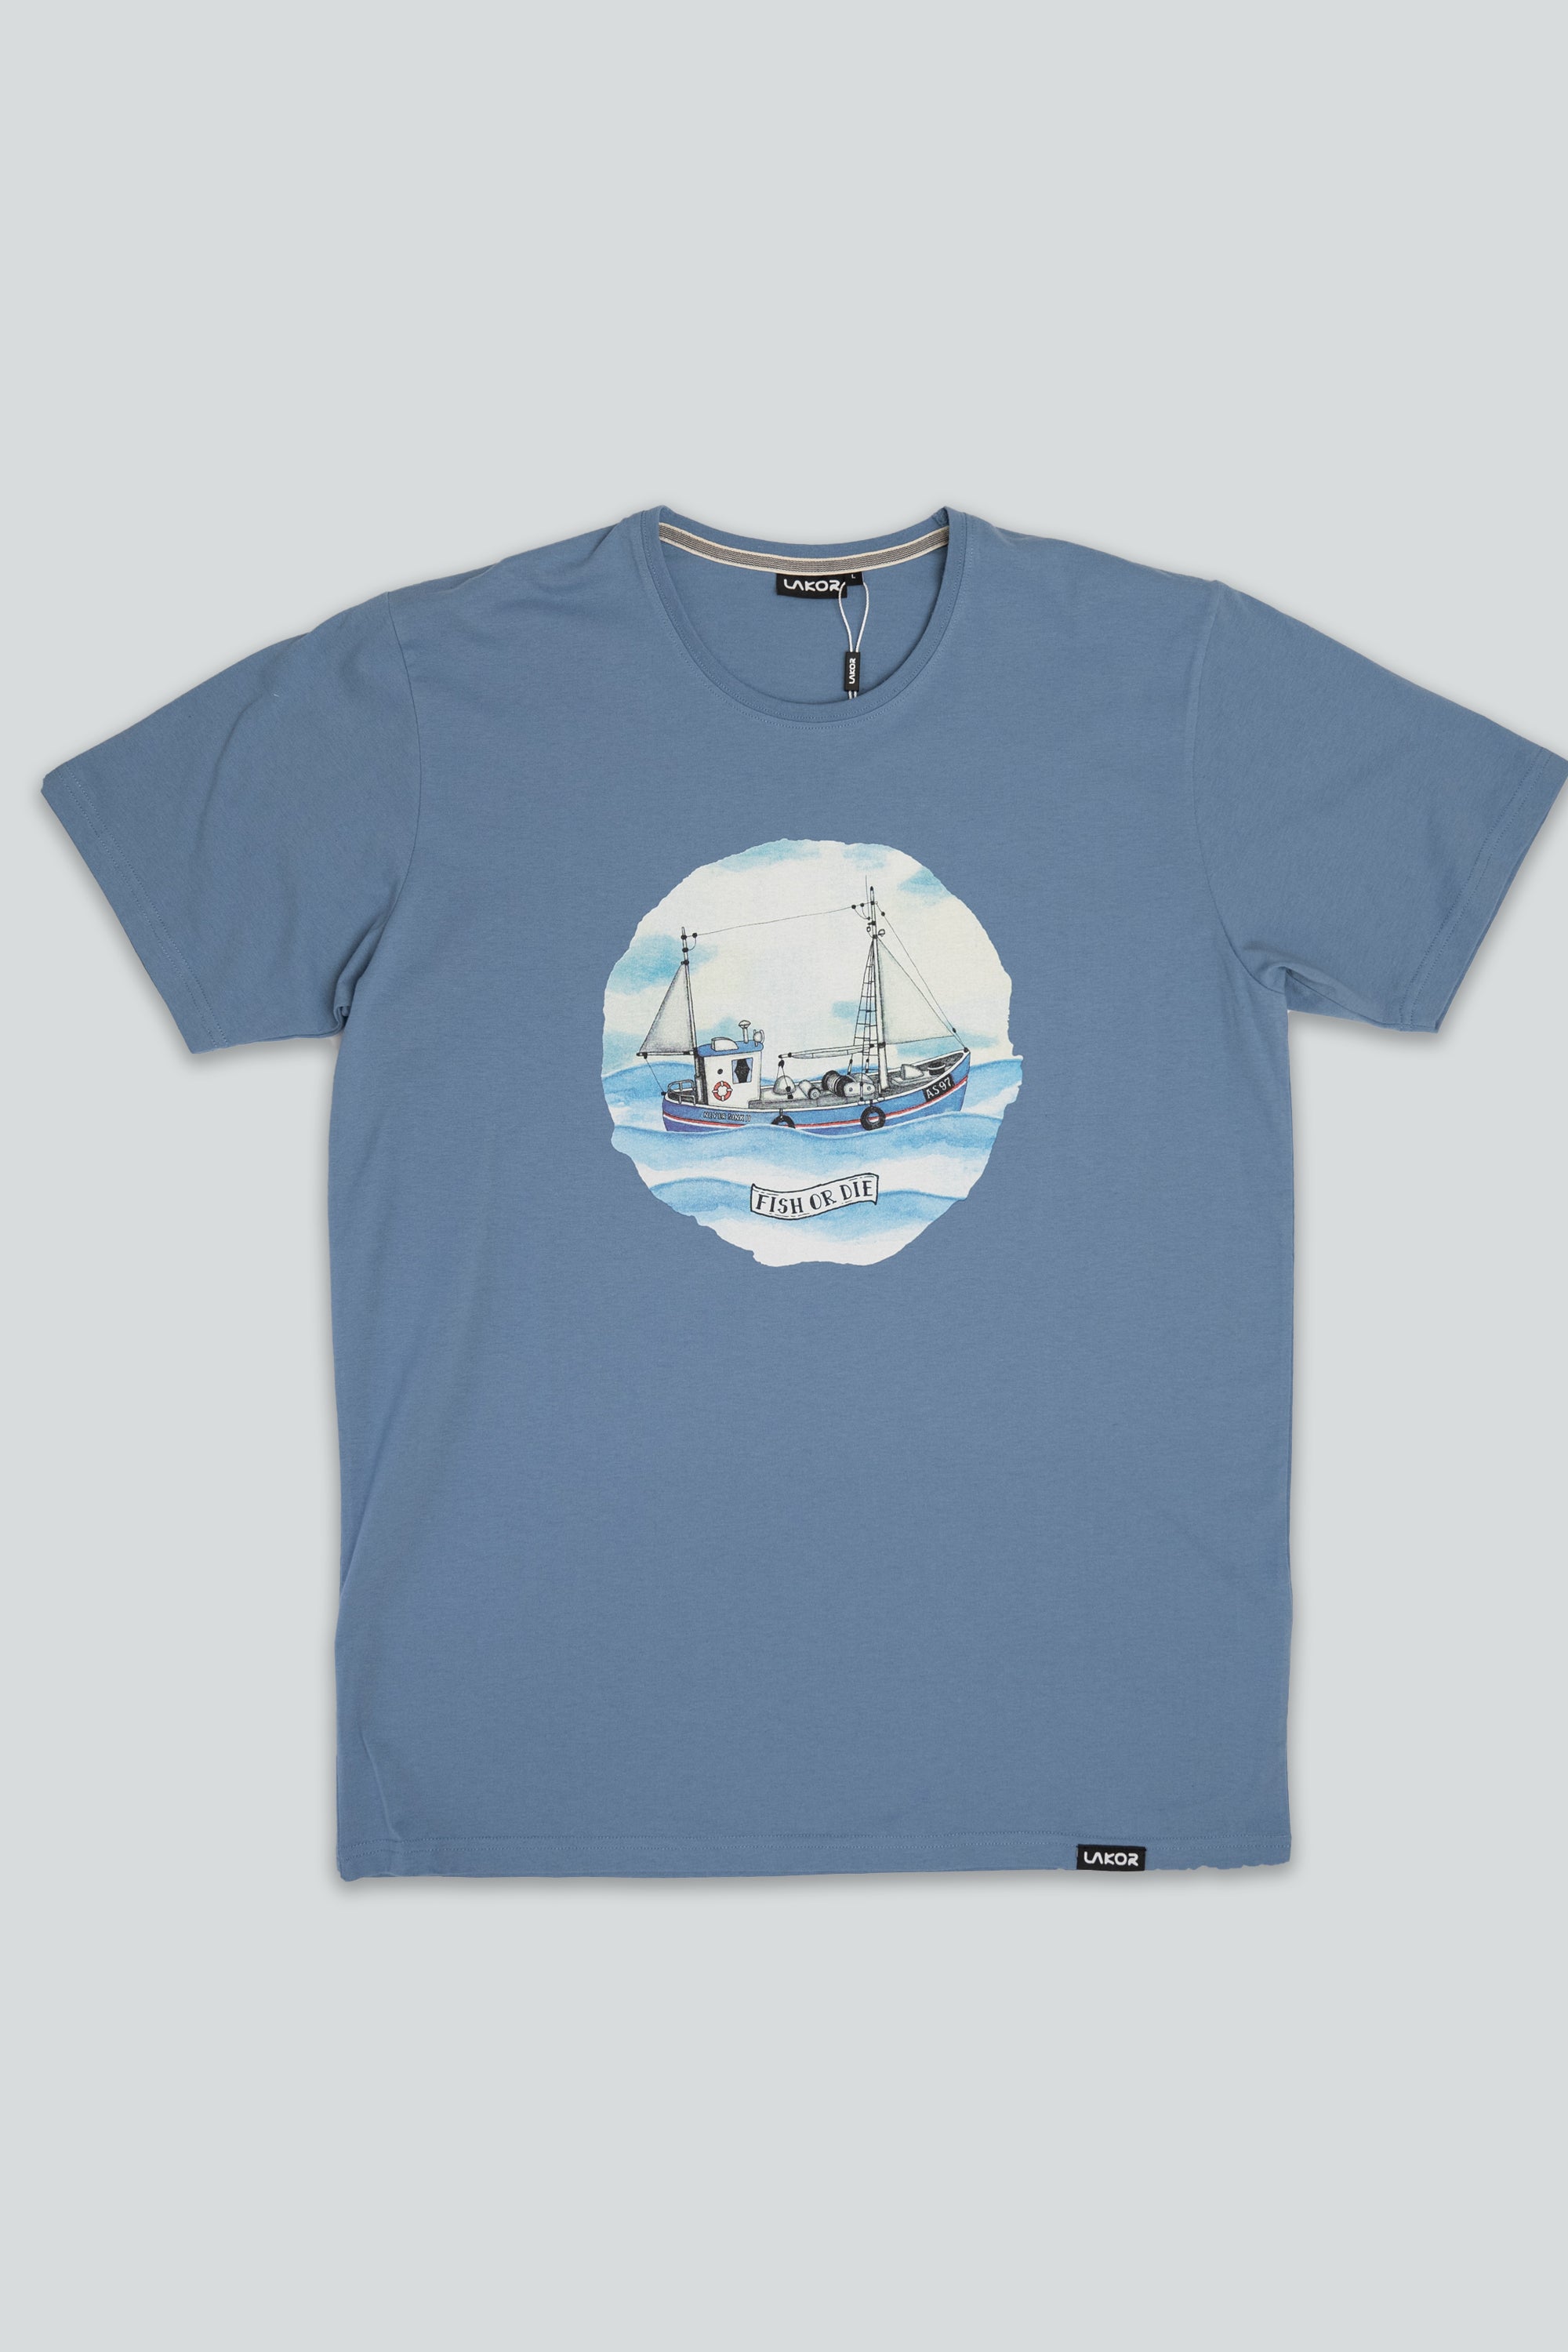 Never Sink 2 T-shirt (Light Blue)